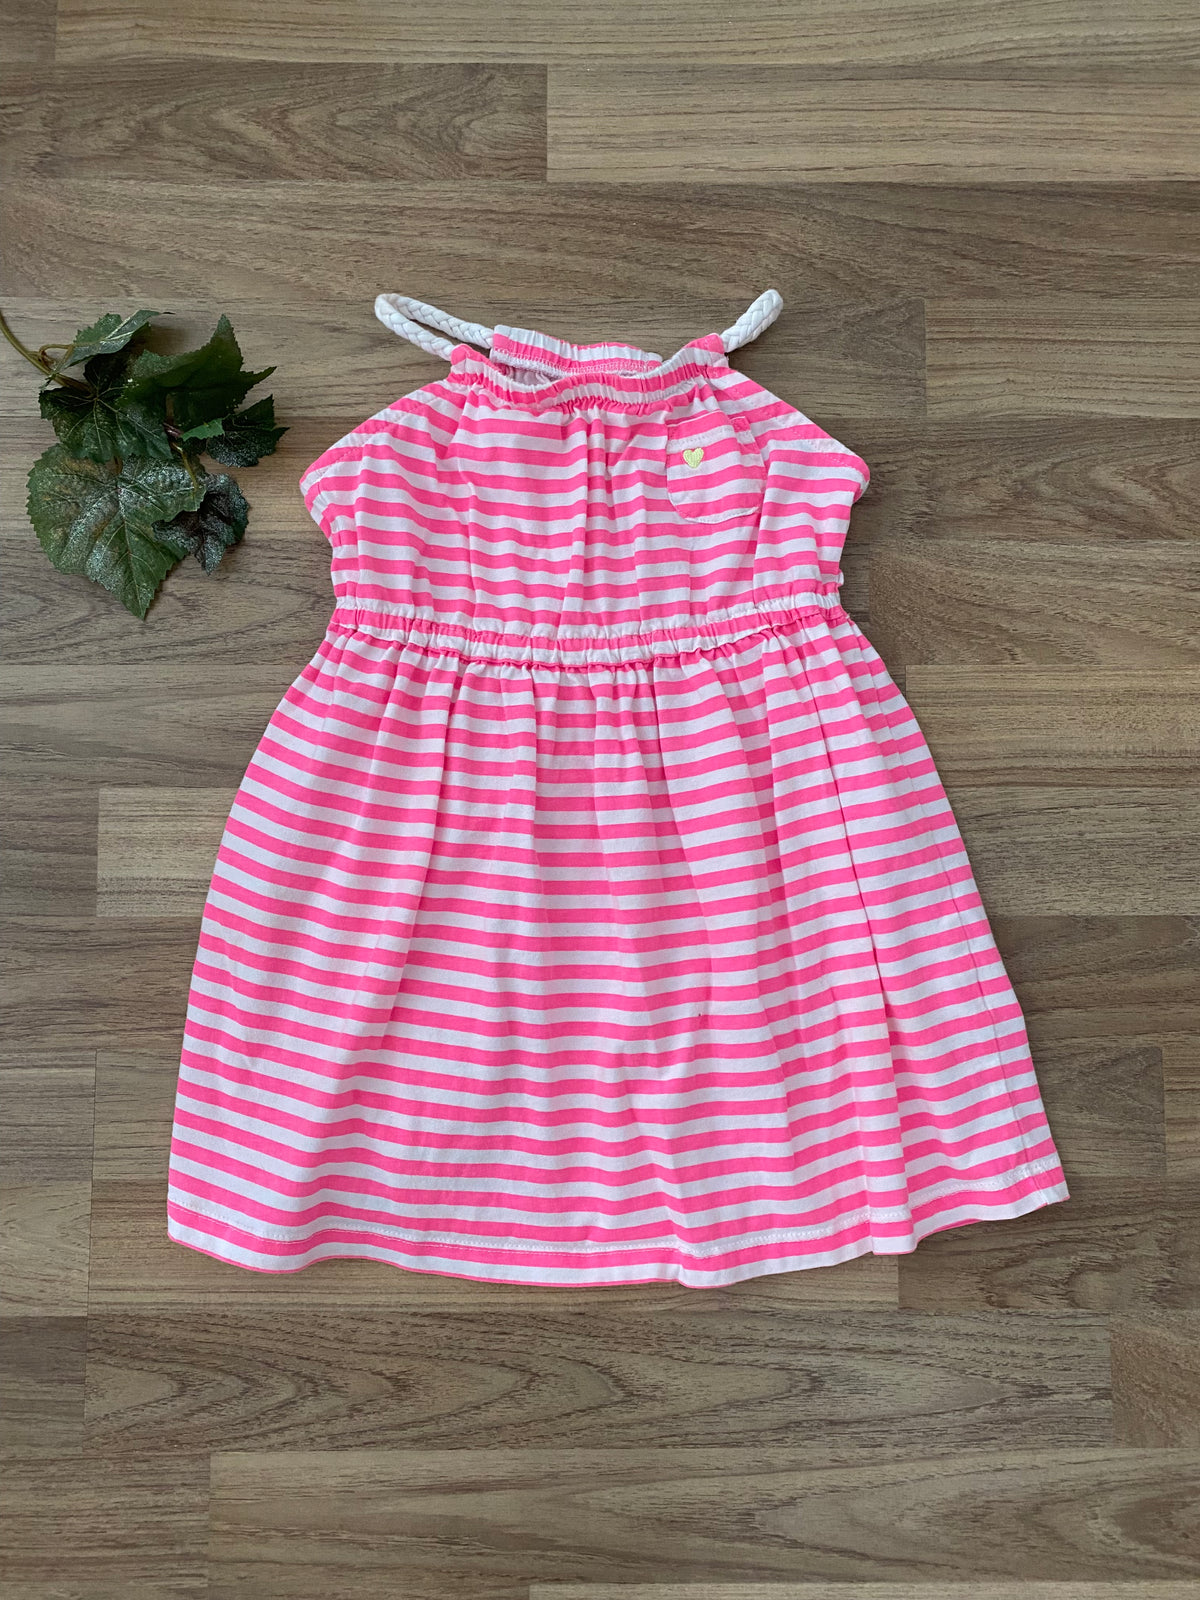 Summer Dress (Girls Size 4)